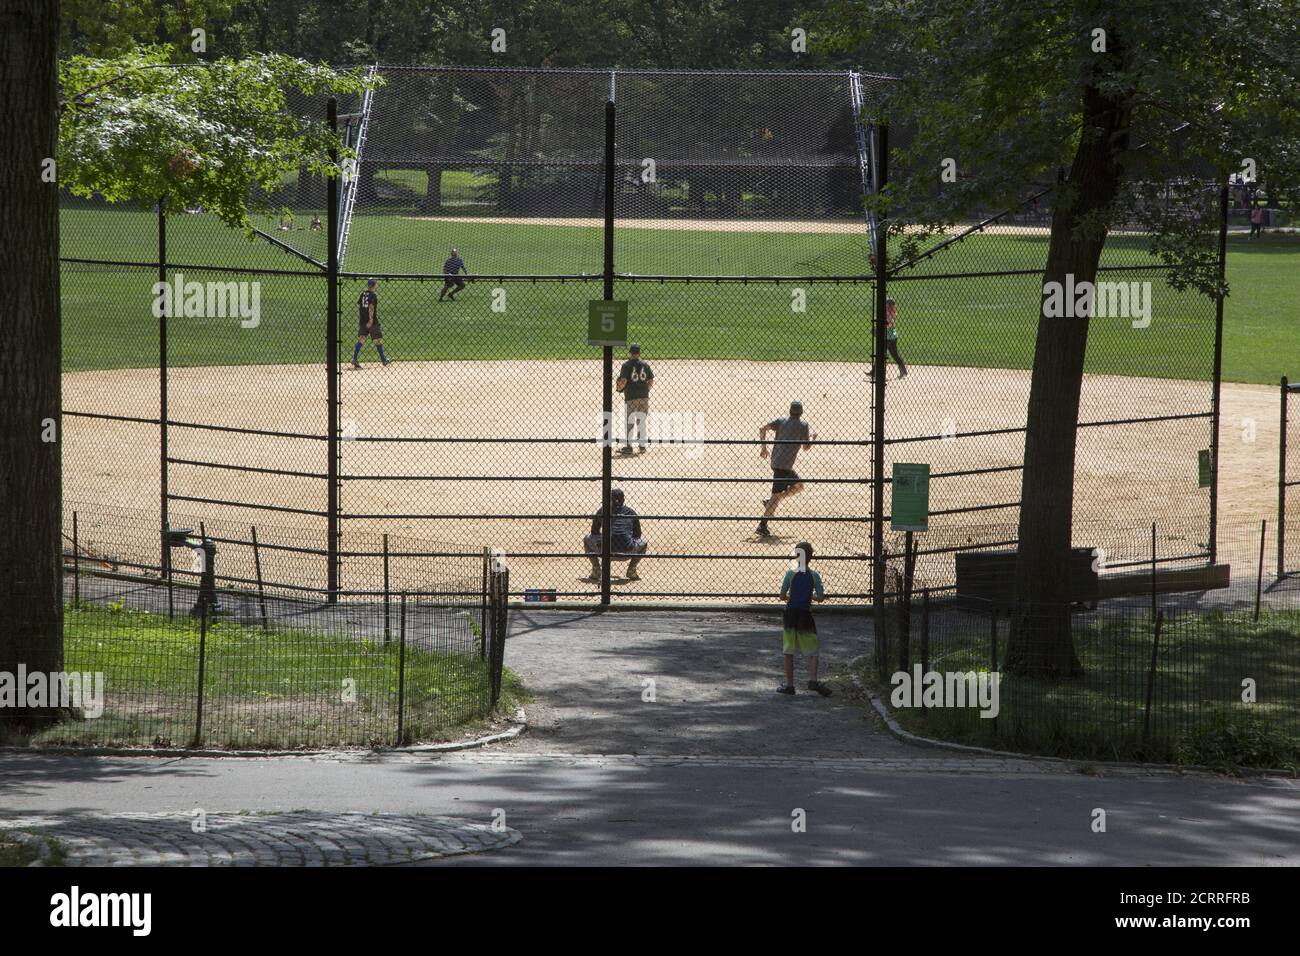 Softball Baseball-Spiel im Central Park, NYC während der Covid-19 Pandemie. Baseball hat natürliche soziale Distanzierung in das Spiel eingebaut, wo die Spieler auf dem Feld verteilt sind. Stockfoto